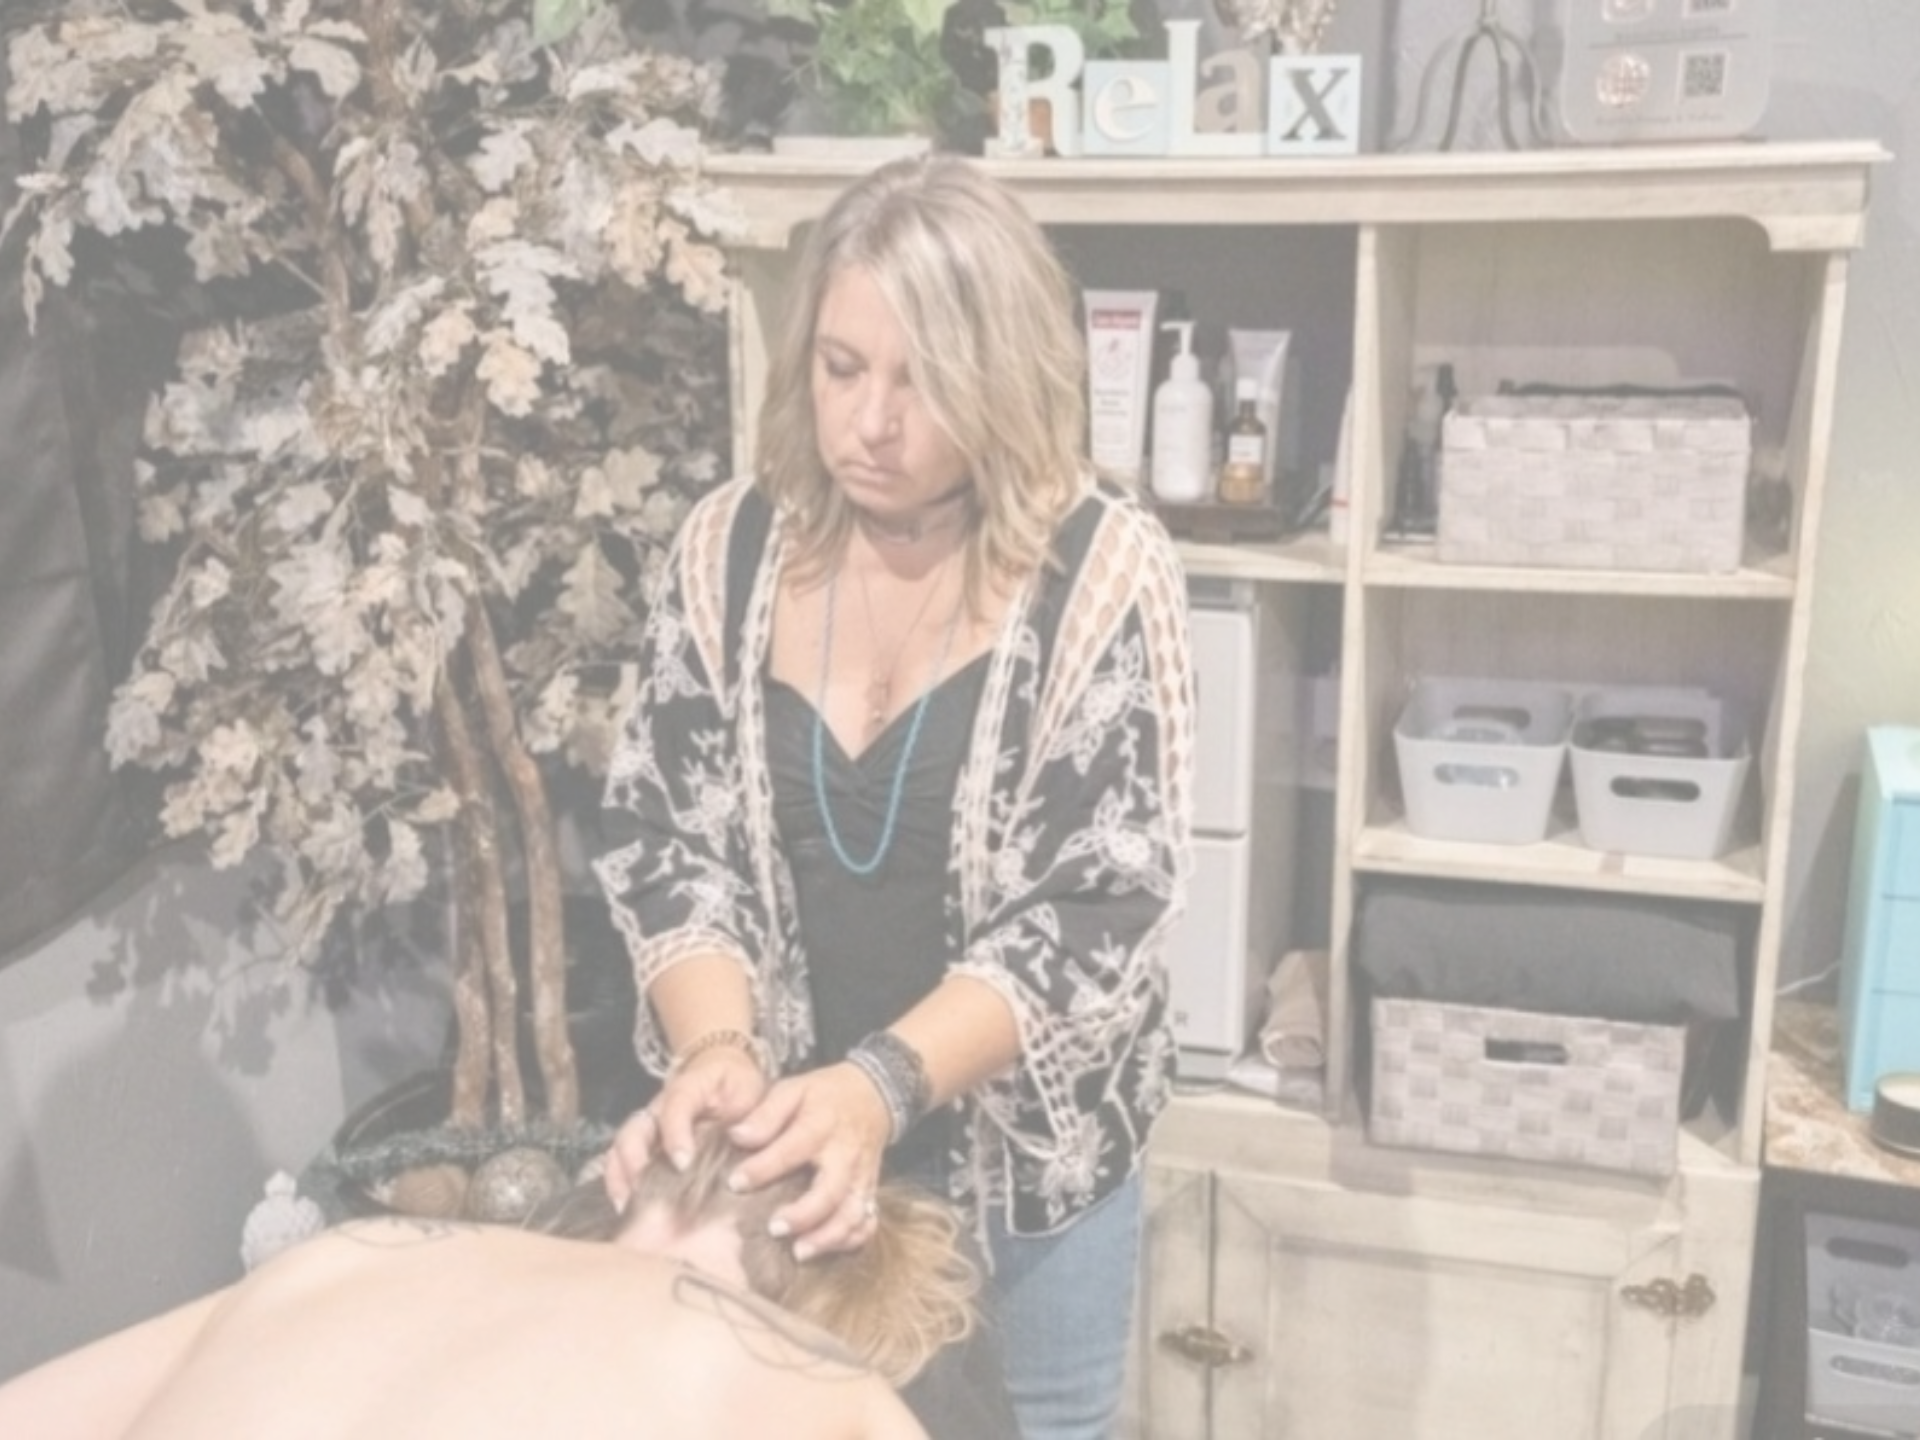 Massage therapist Jessa giving a client a relaxing head massage